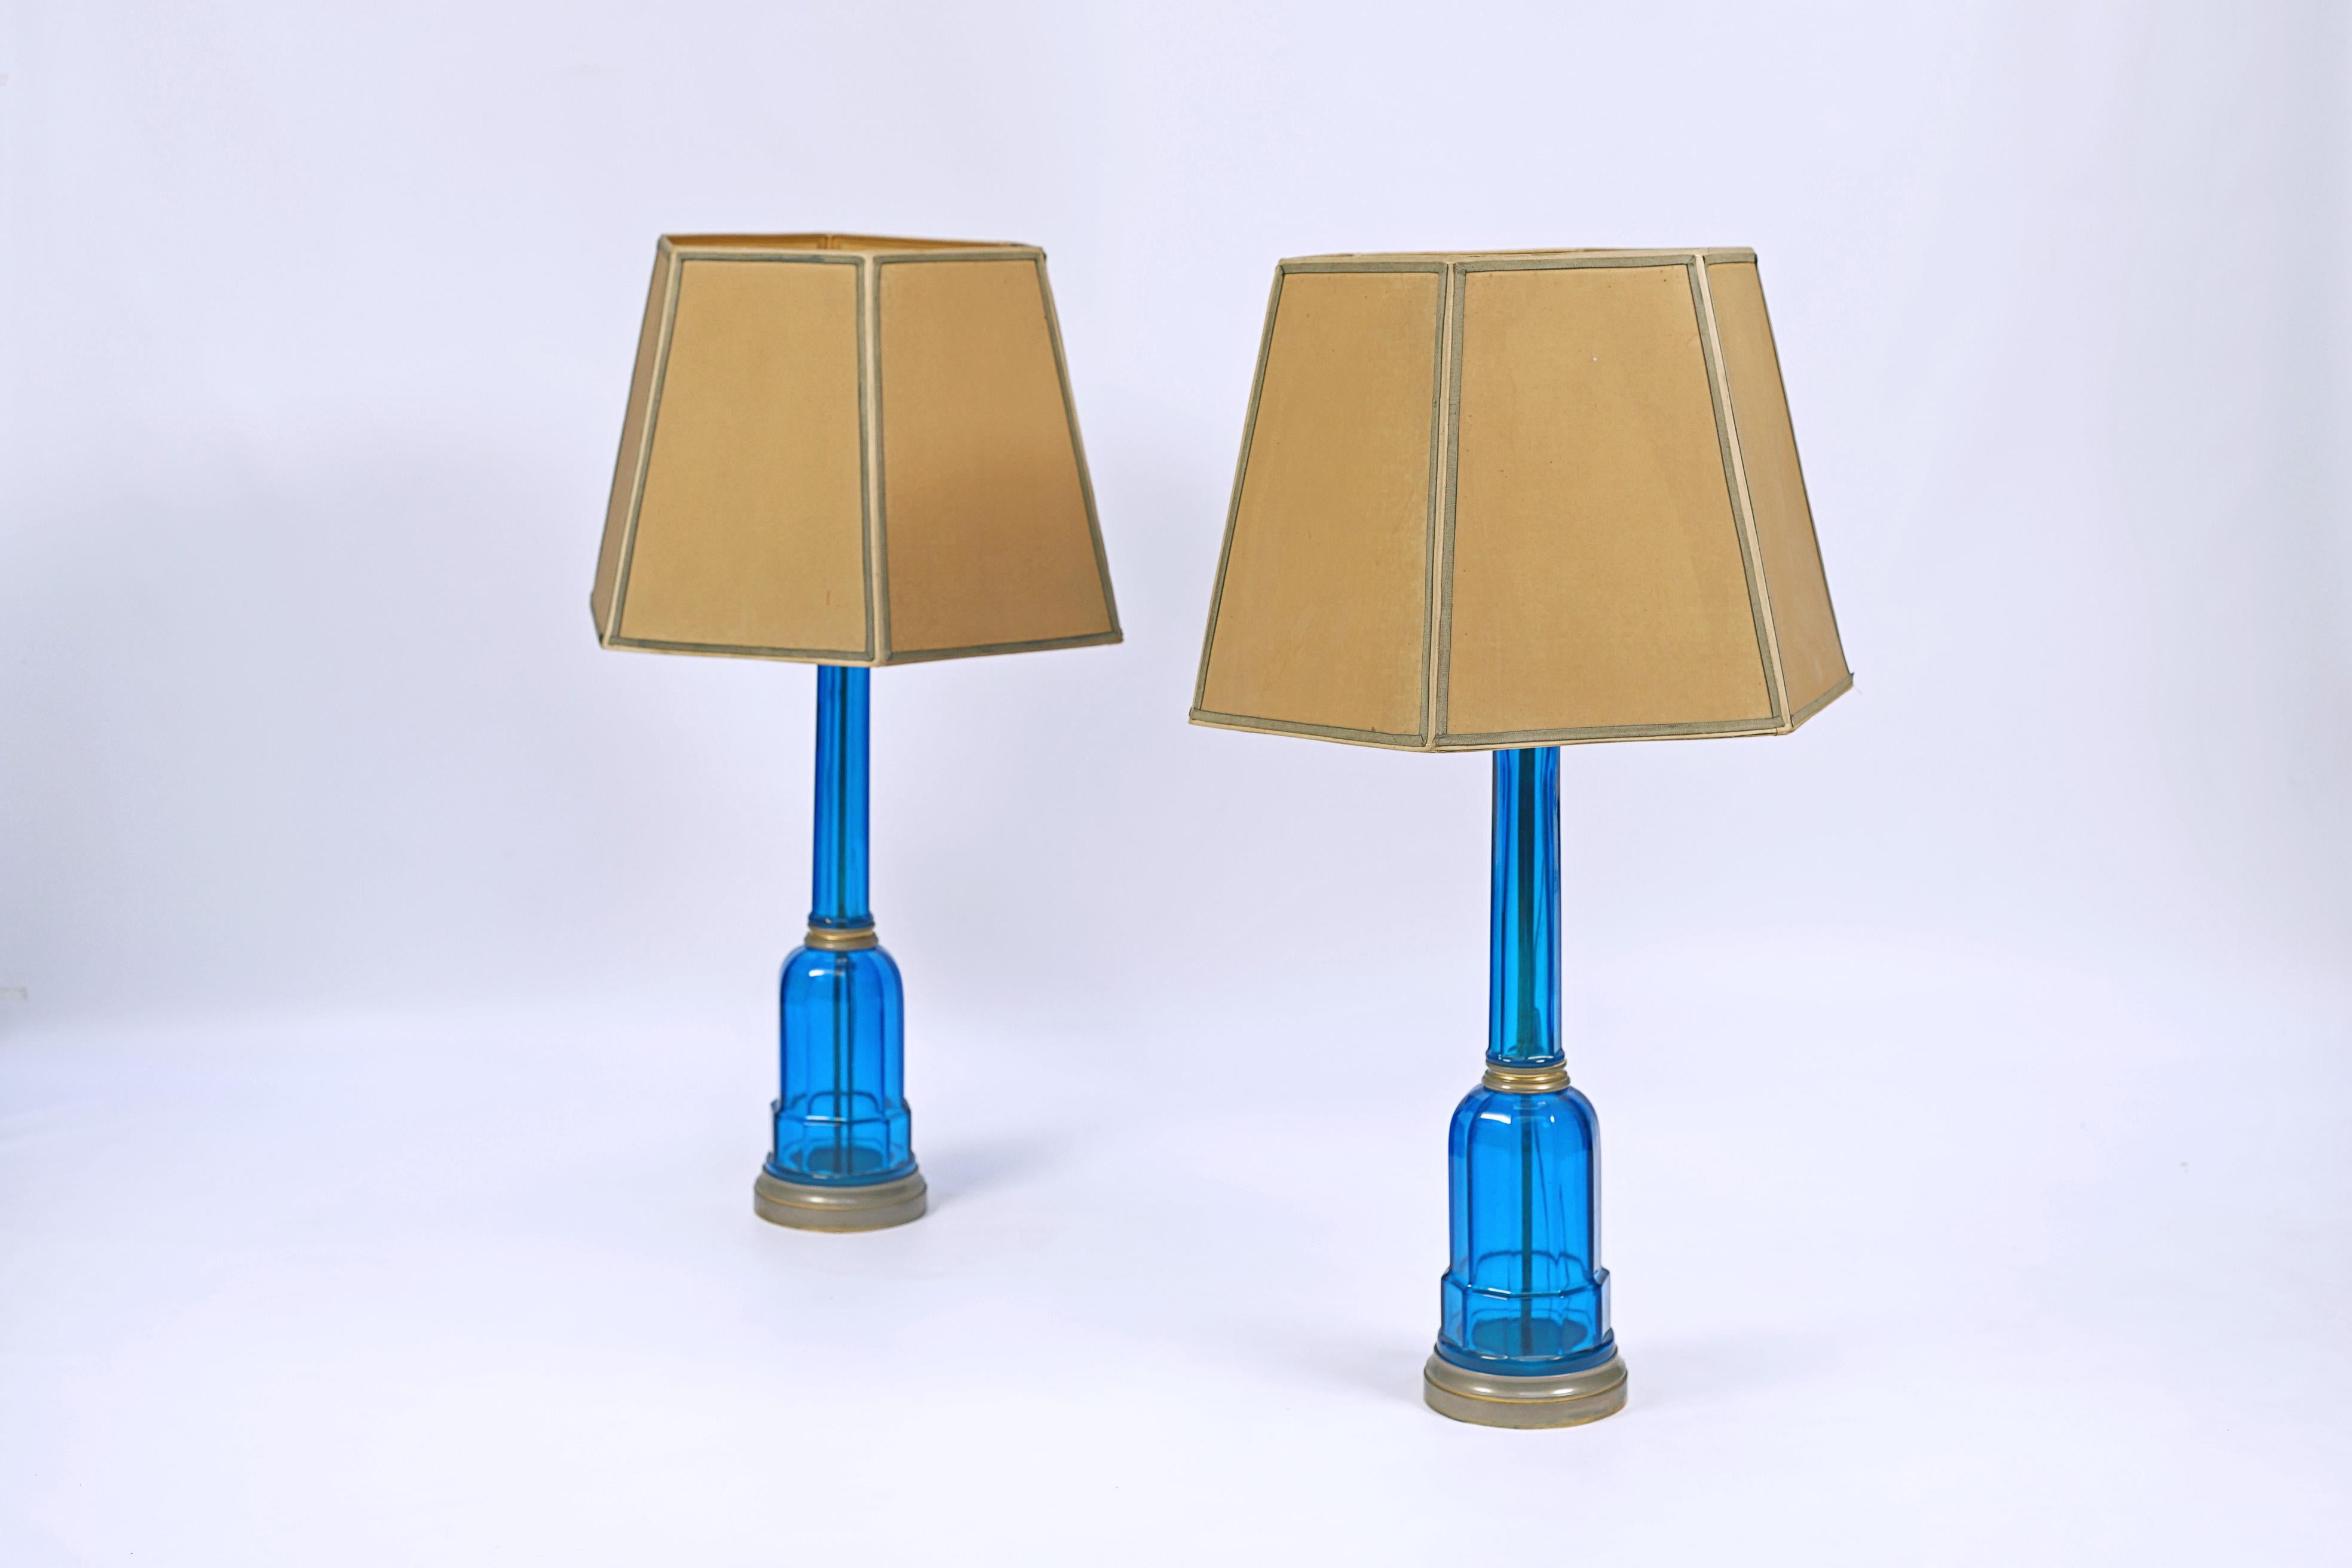 Paar Lampen aus blauem Kristall. Sechseckige Form und Details aus Bronze.

Europa, CIRCA 1930.